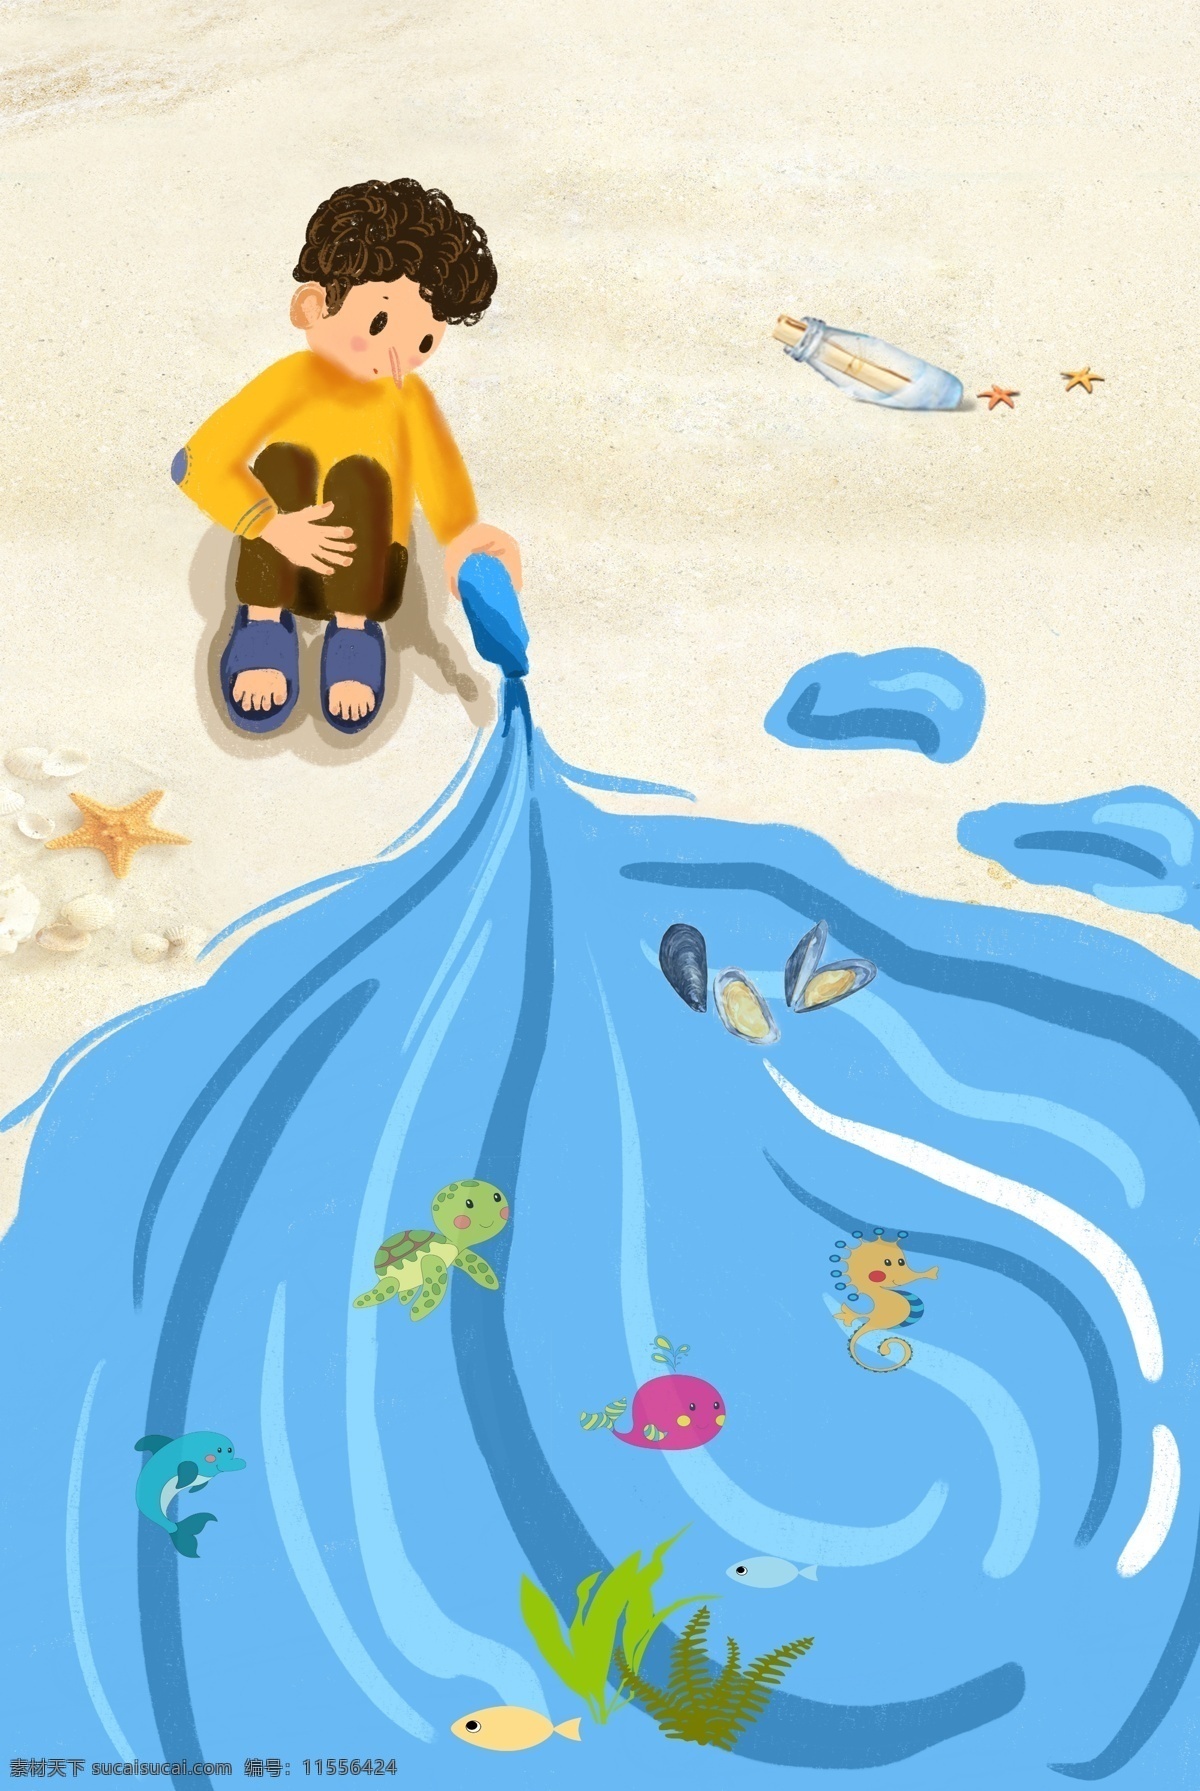 卡通 海边 男孩 趣味 可爱 沙滩 背景 图 背景图 h5 乌龟 海马